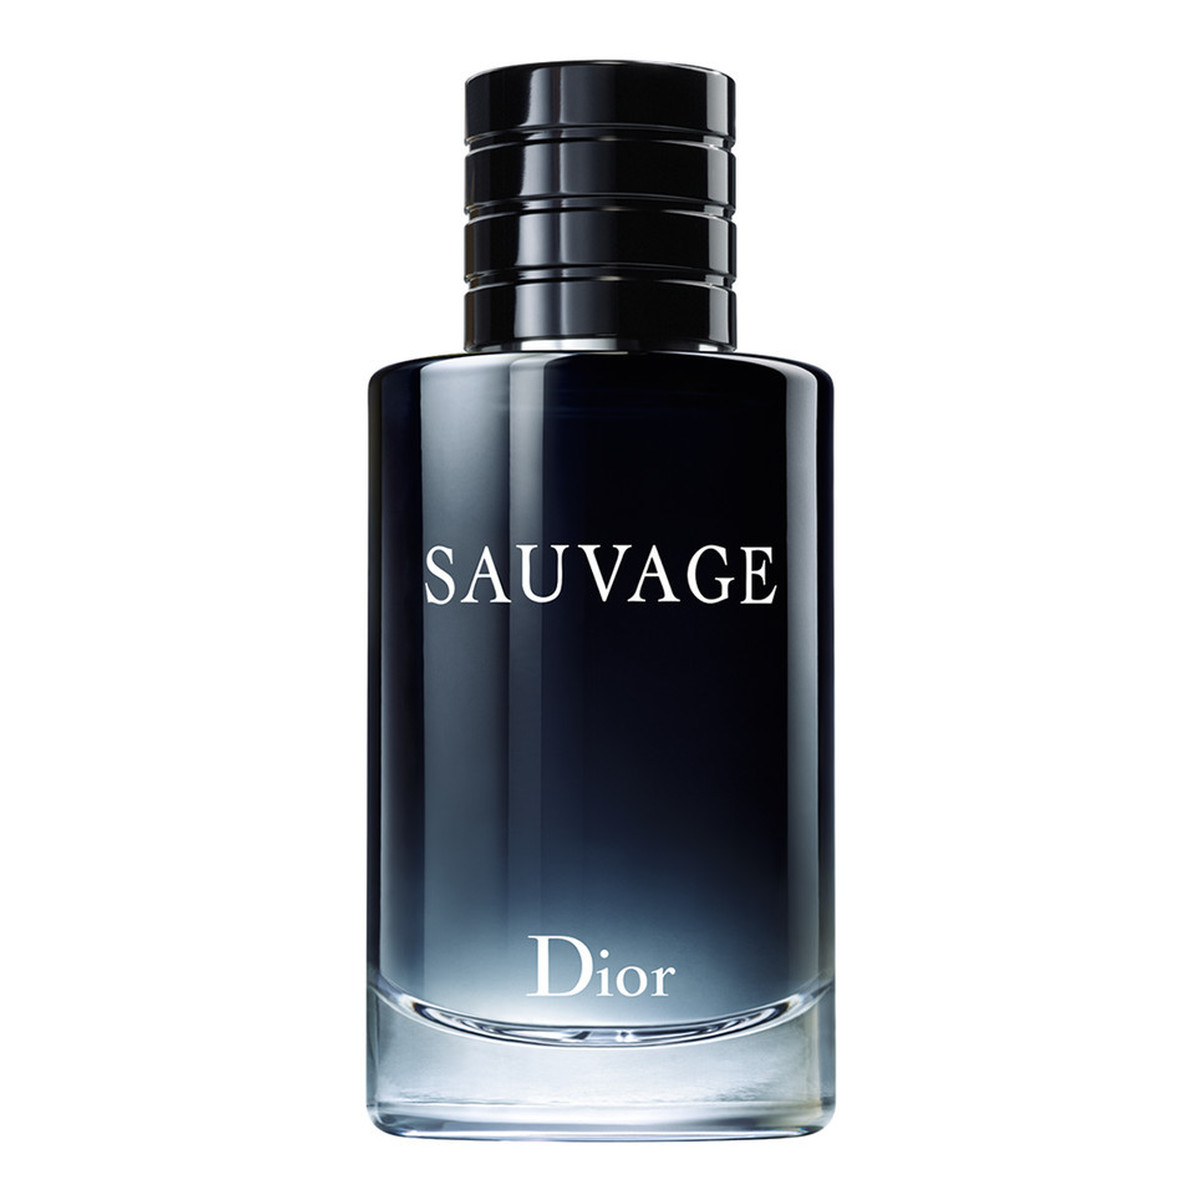 Dior Sauvage woda toaletowa dla mężczyzn 100ml